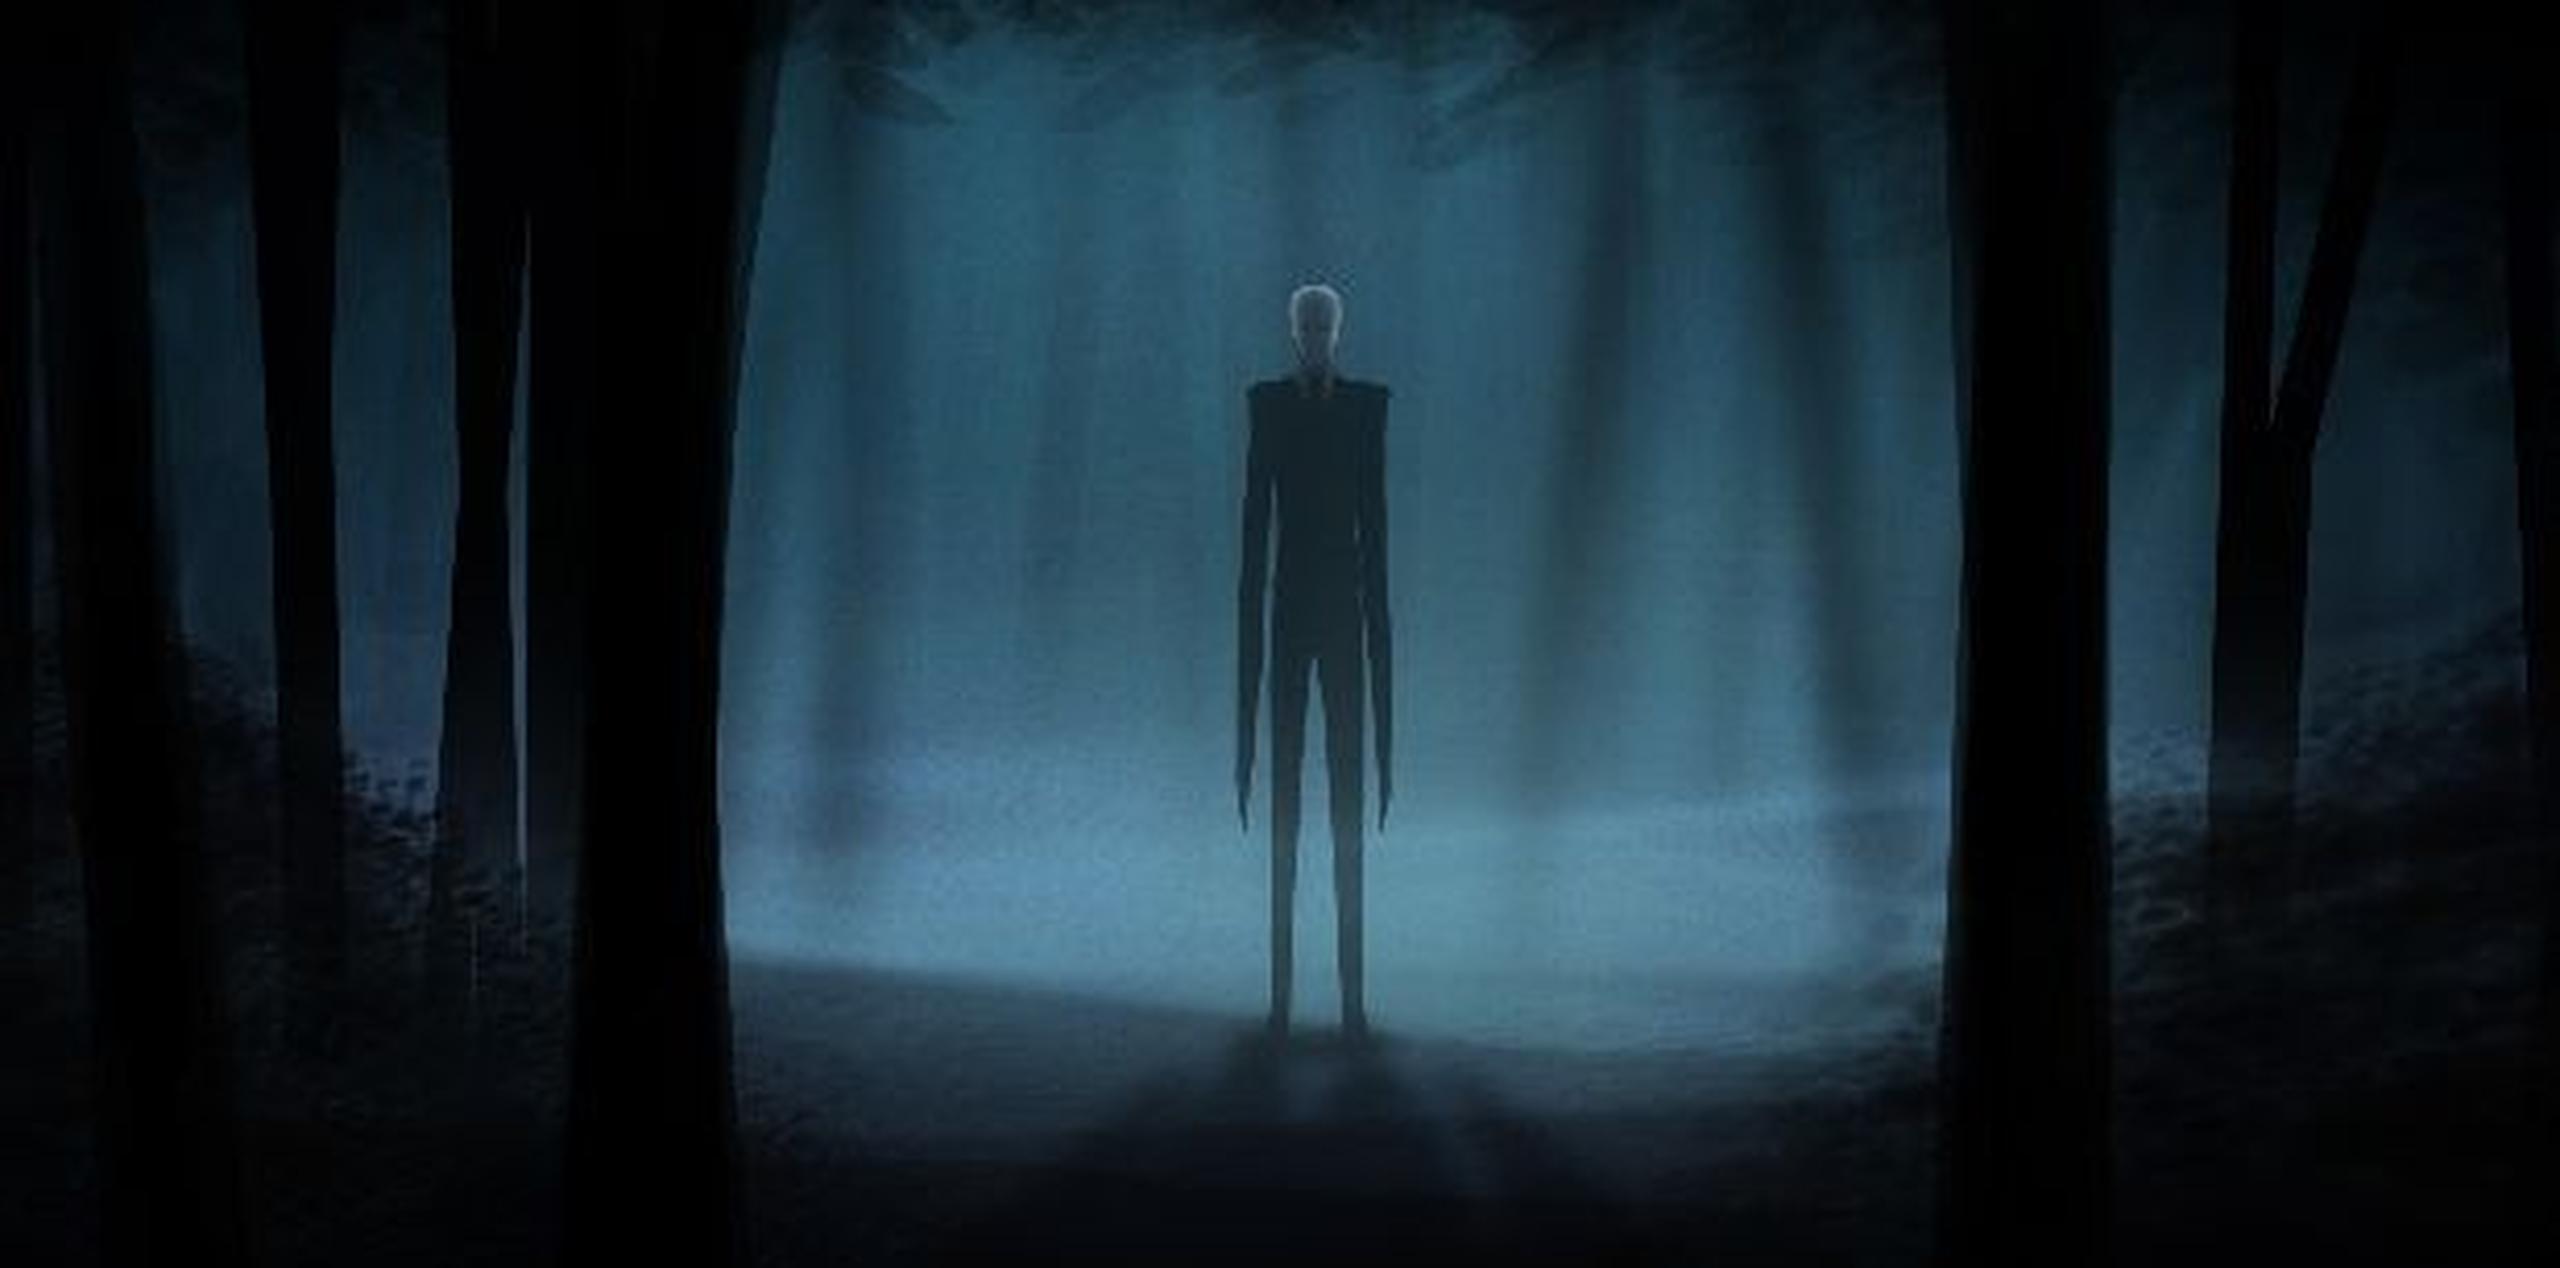 Slenderman apareció por primera vez en la red en junio de 2009, en el hilo "Paranormal" del foro SomethingAwful. (El Comercio)